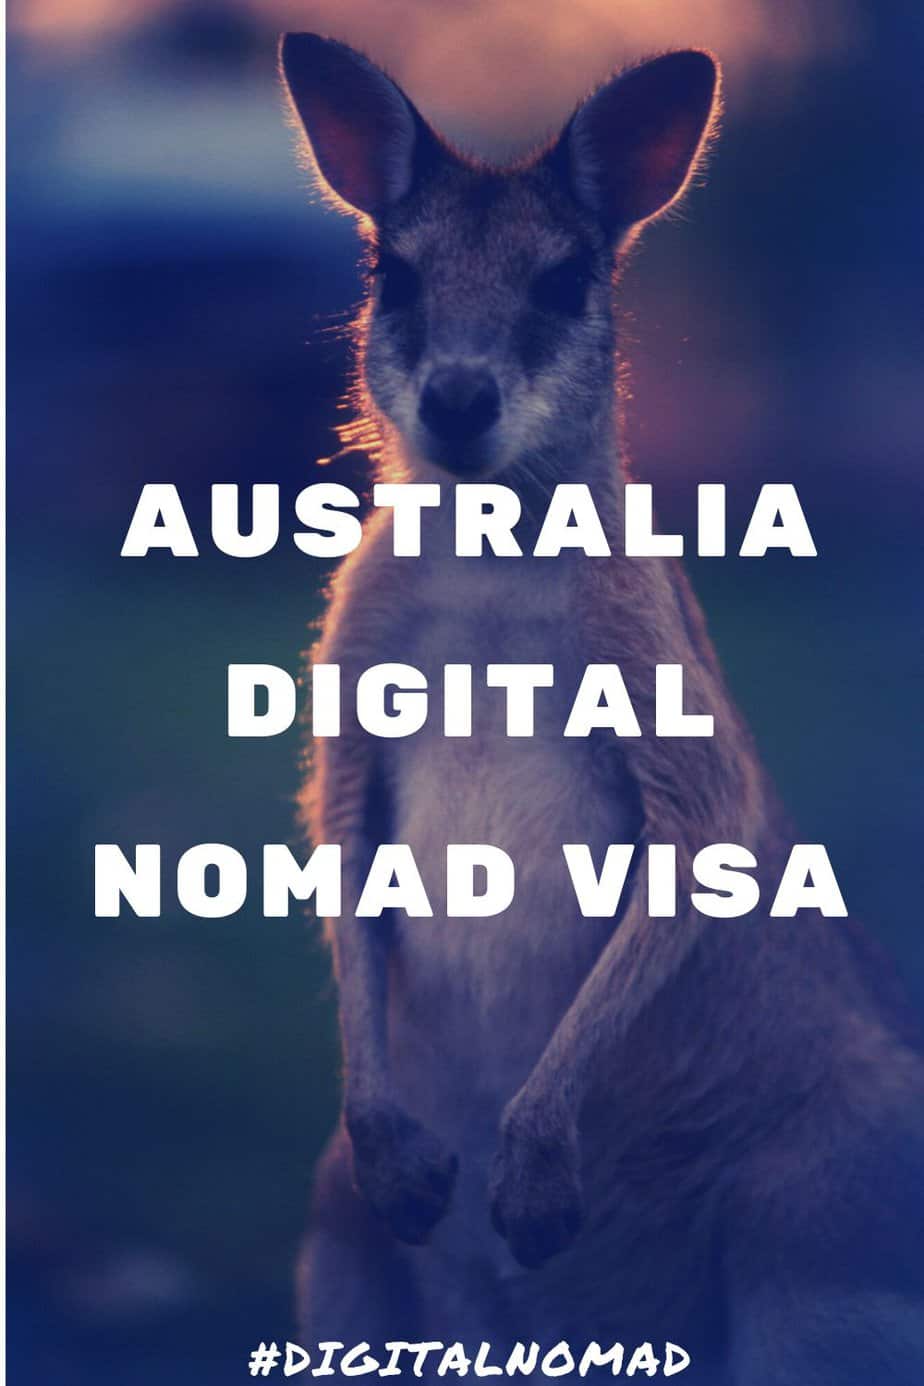 Australia Digital Nomad Visa – Does it exist?